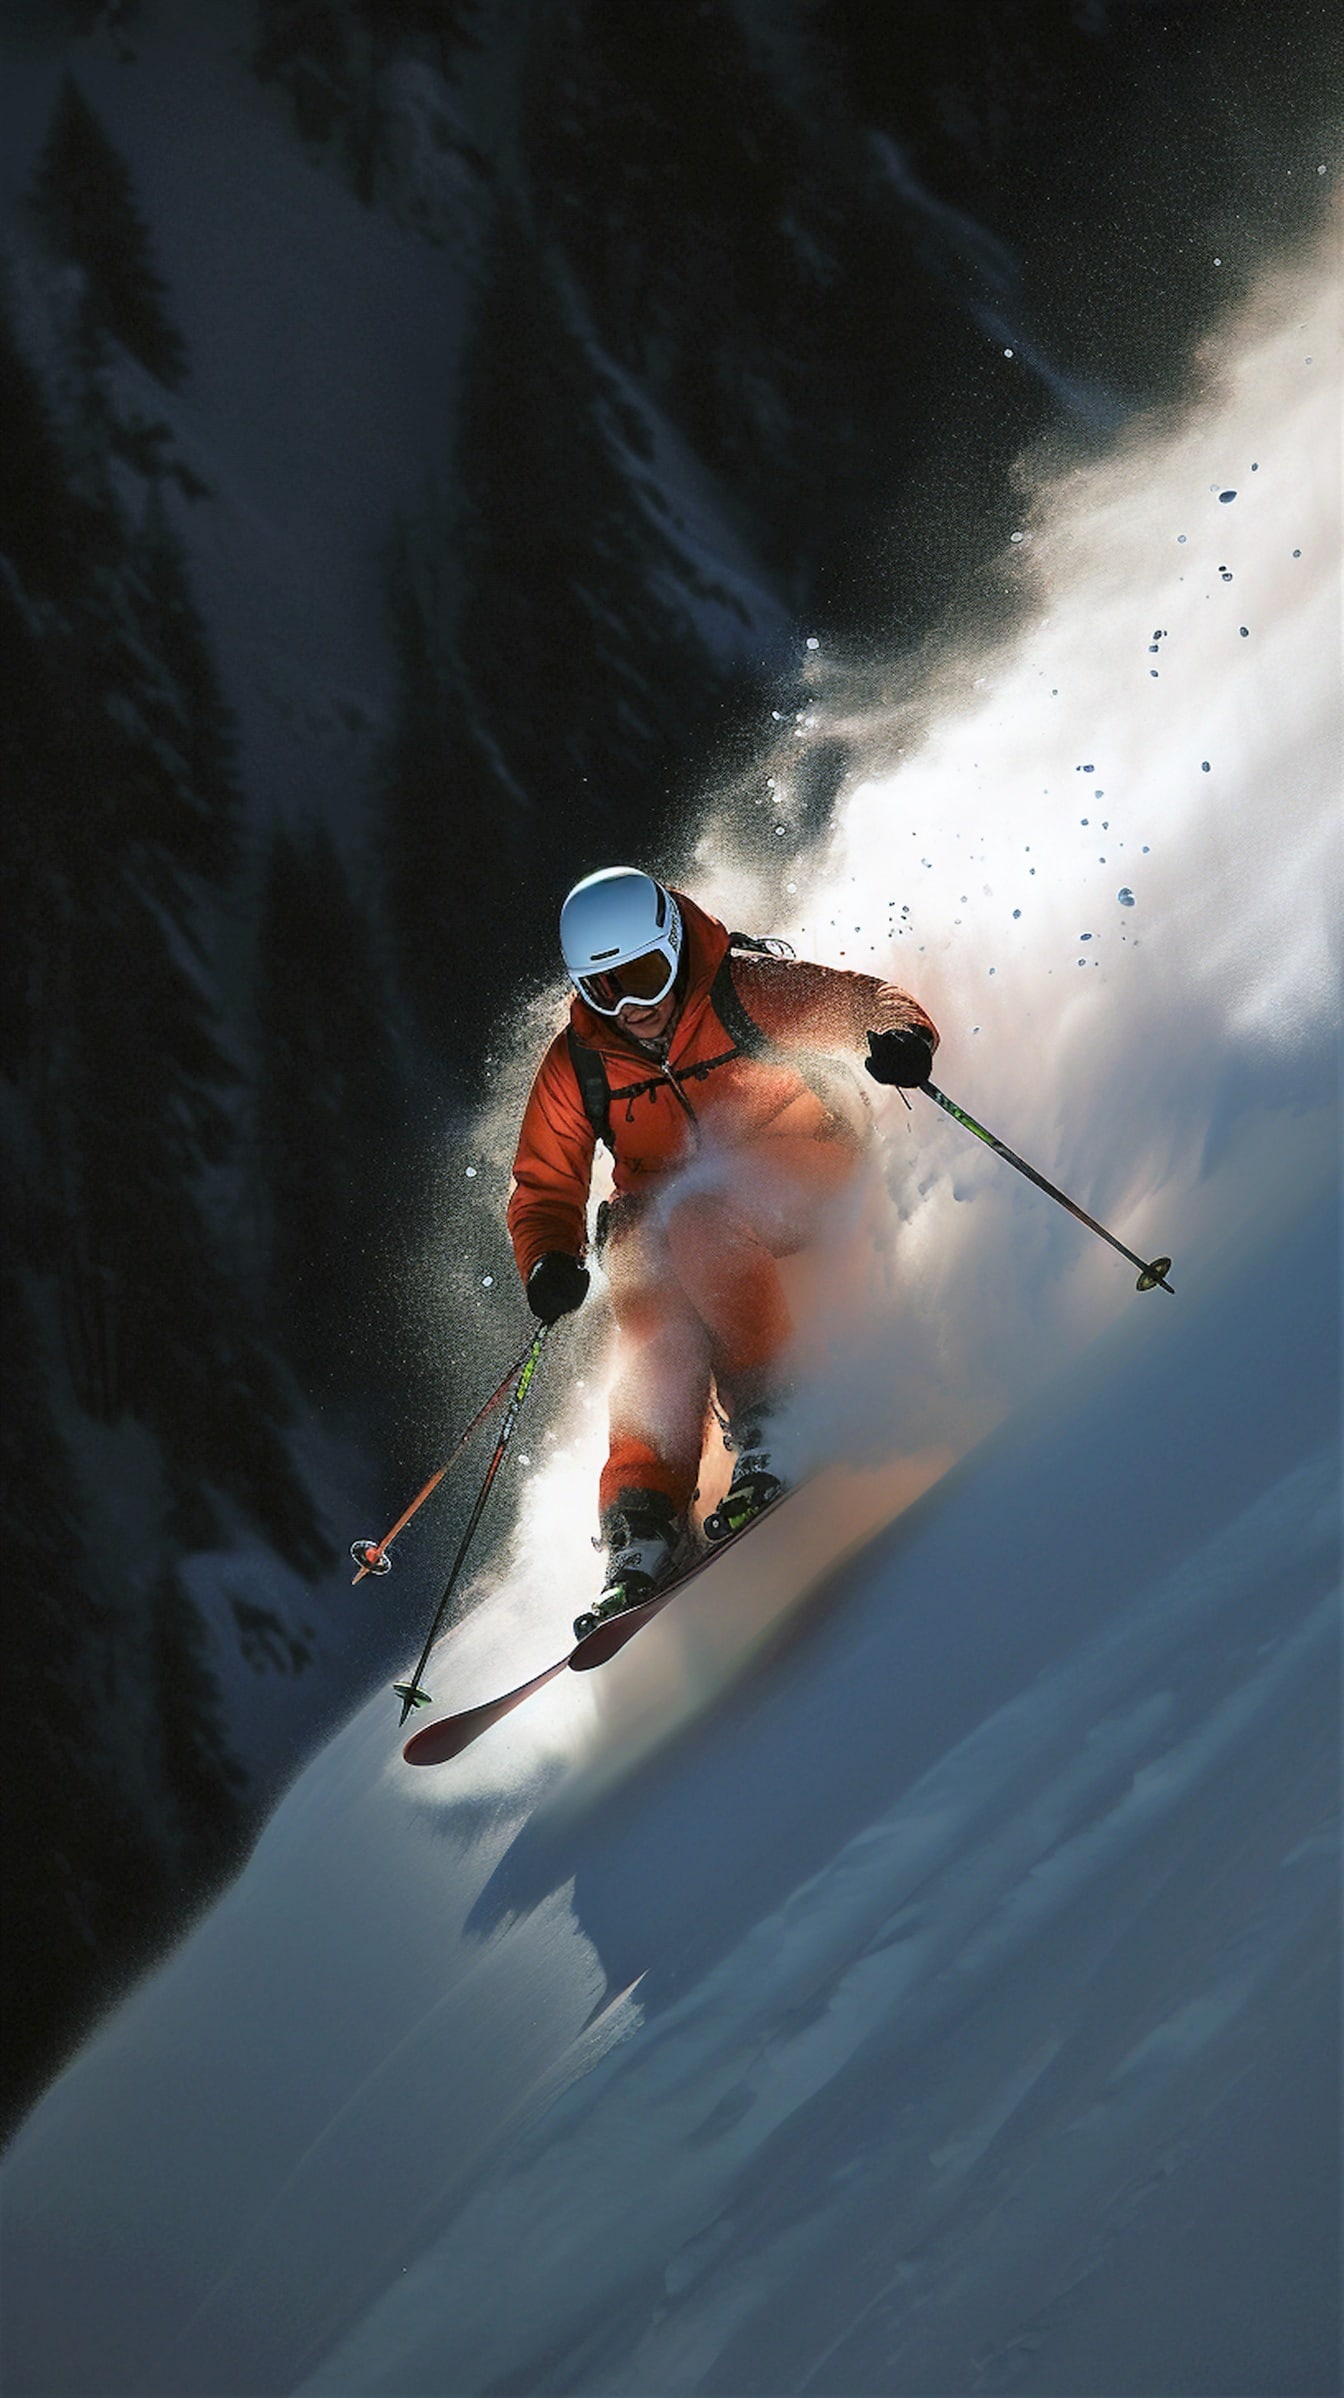 Skieur extrême en veste jaune orangé skiant en montagne